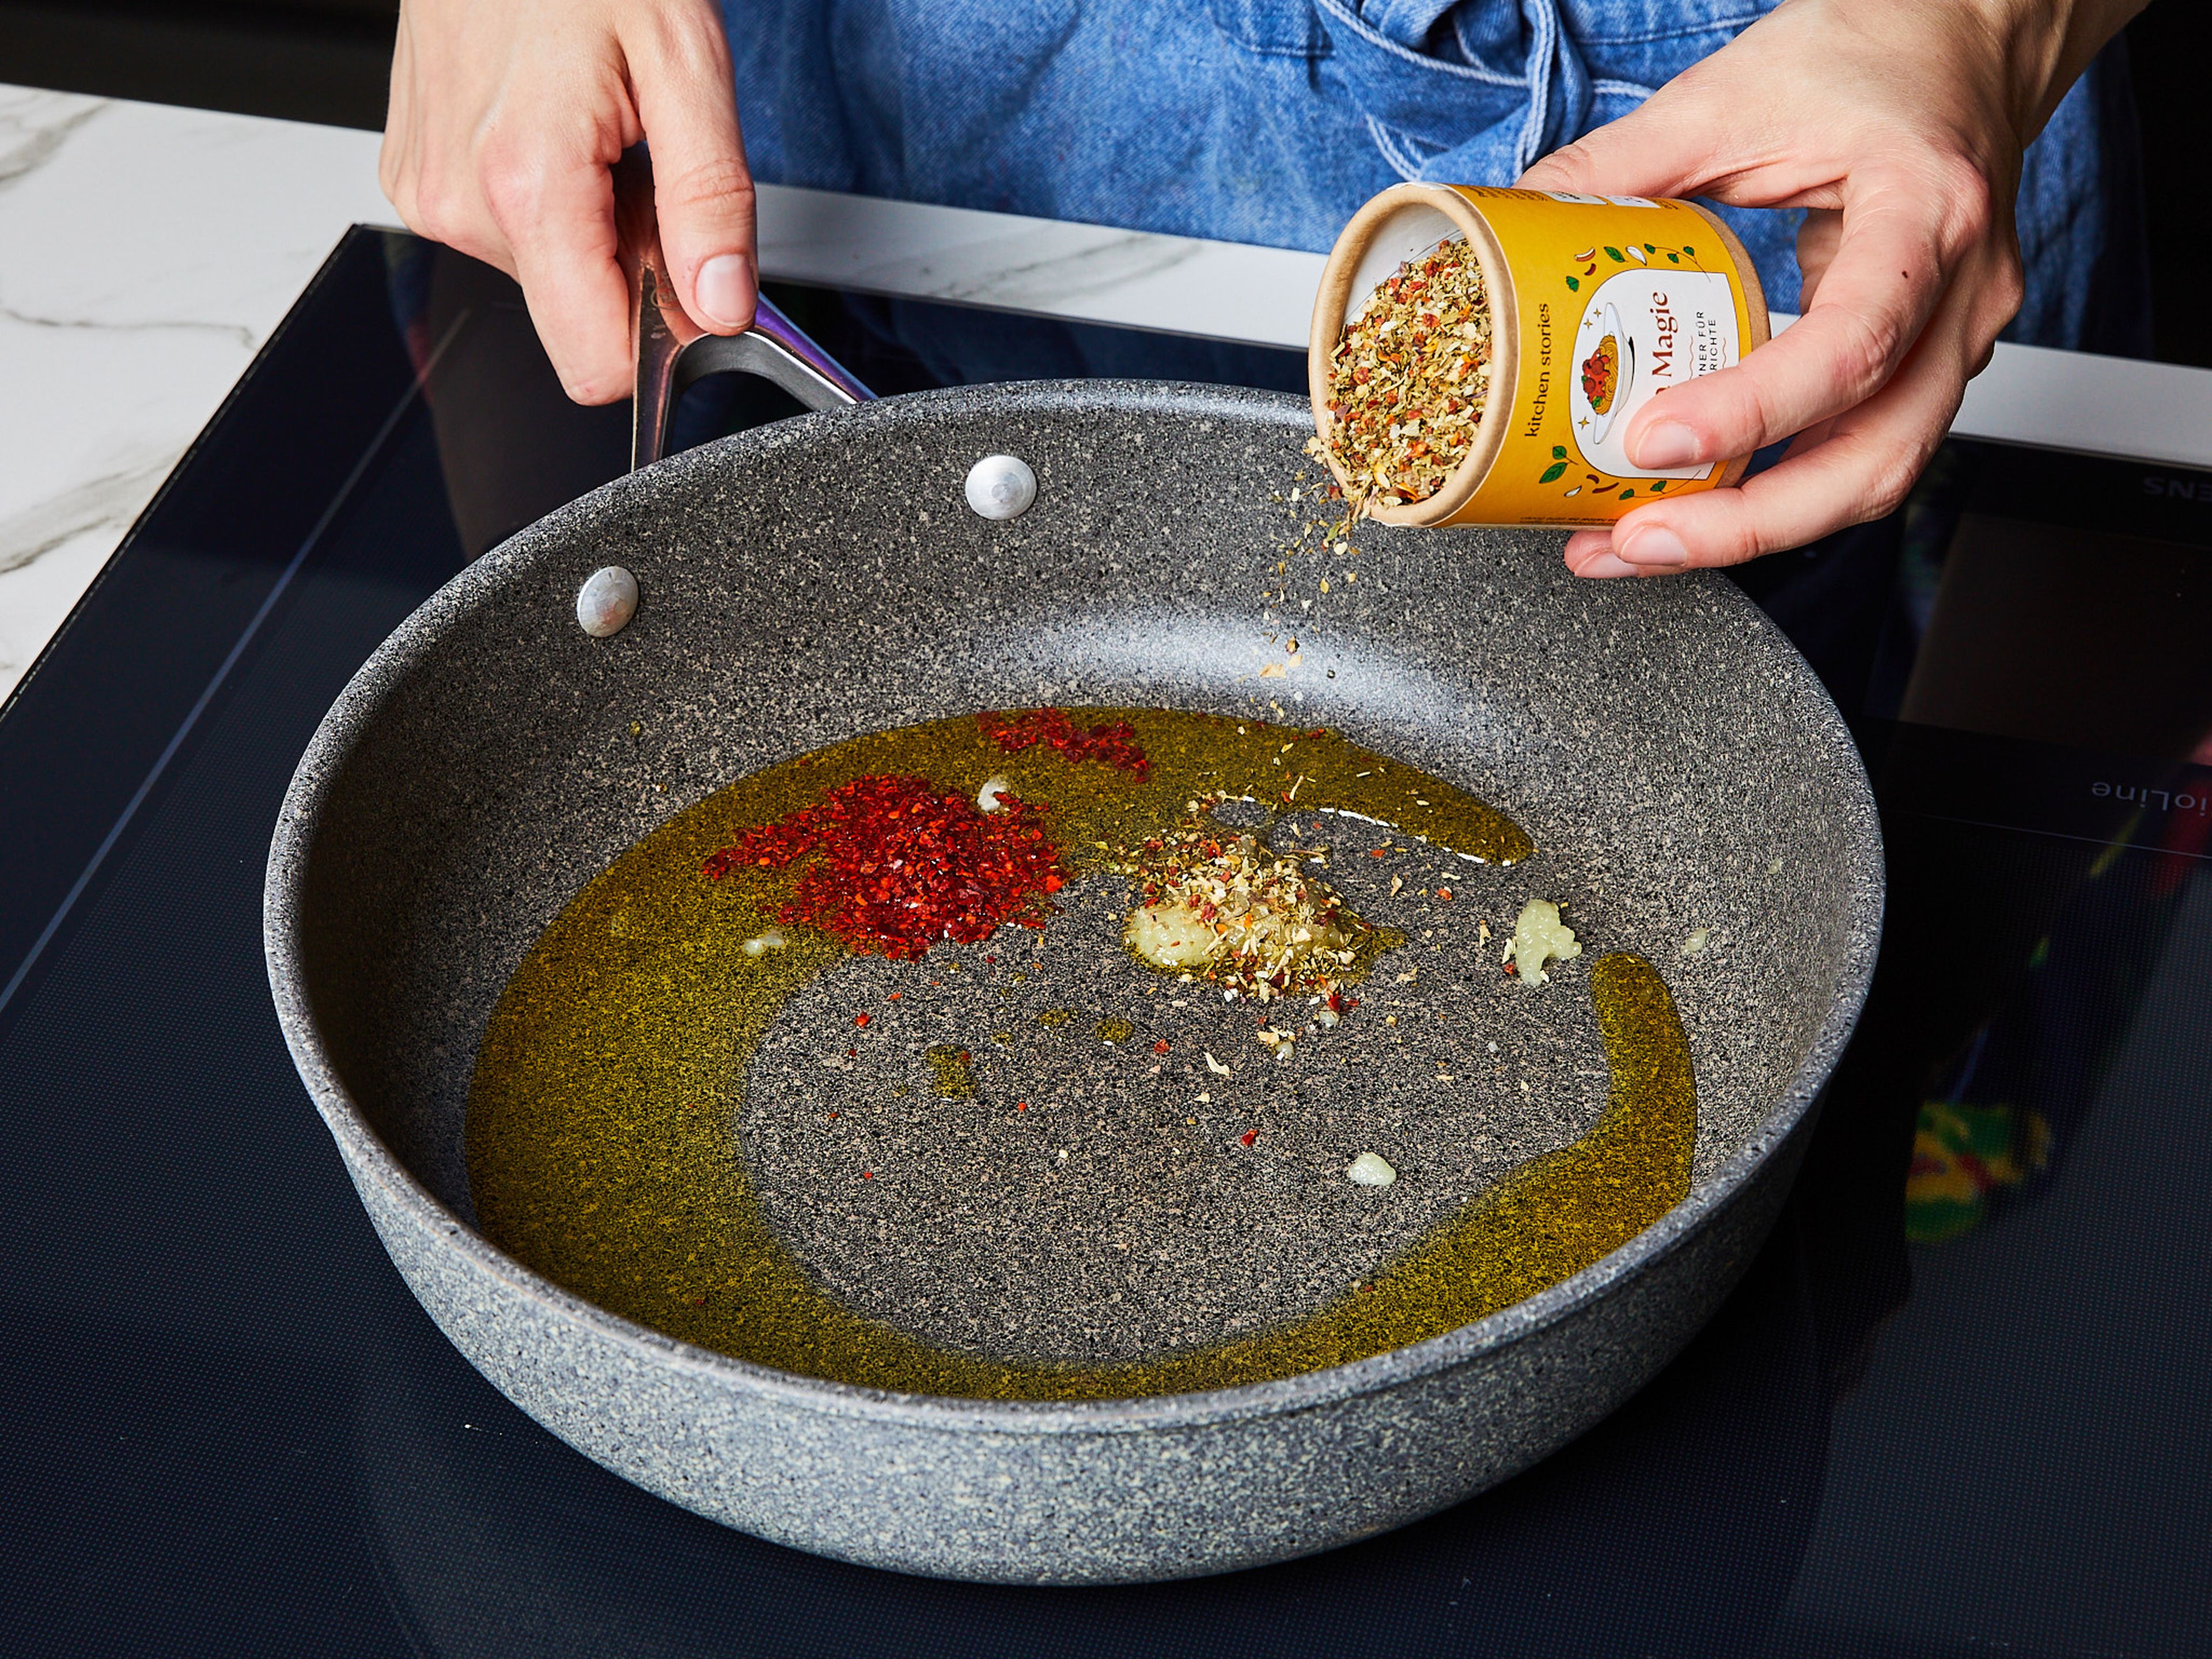 Für die Tomatenbrühe Wasser zum Kochen bringen, Tomatenmark hinzufügen und verrühren. Mit Salz und Pfeffer würzen und bei schwacher Hitze warm halten. Knoblauch schälen und fein reiben. In einer großen beschichteten Pfanne Olivenöl bei mittlerer bis hoher Temperatur erhitzen, Knoblauch, Chiliflocken und Pasta Magie Gewürzmischung hinzufügen. Alles gut vermengen.